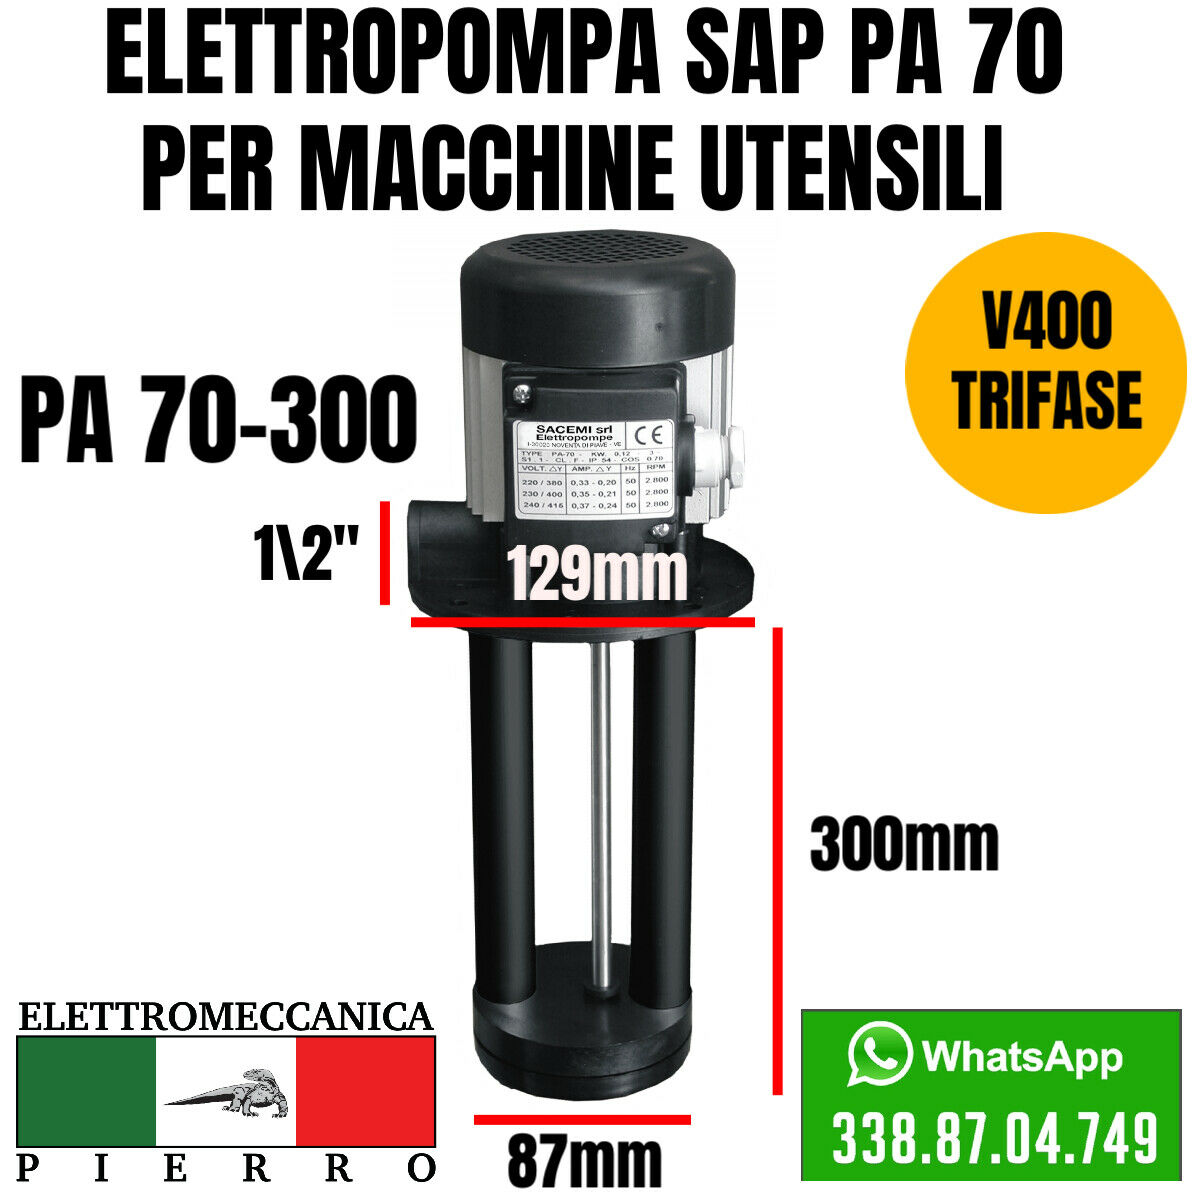 Logo elettromeccanica Pierro elettromeccanica express Elettropompa sacemi per macchine utensili SAP PA 70-300